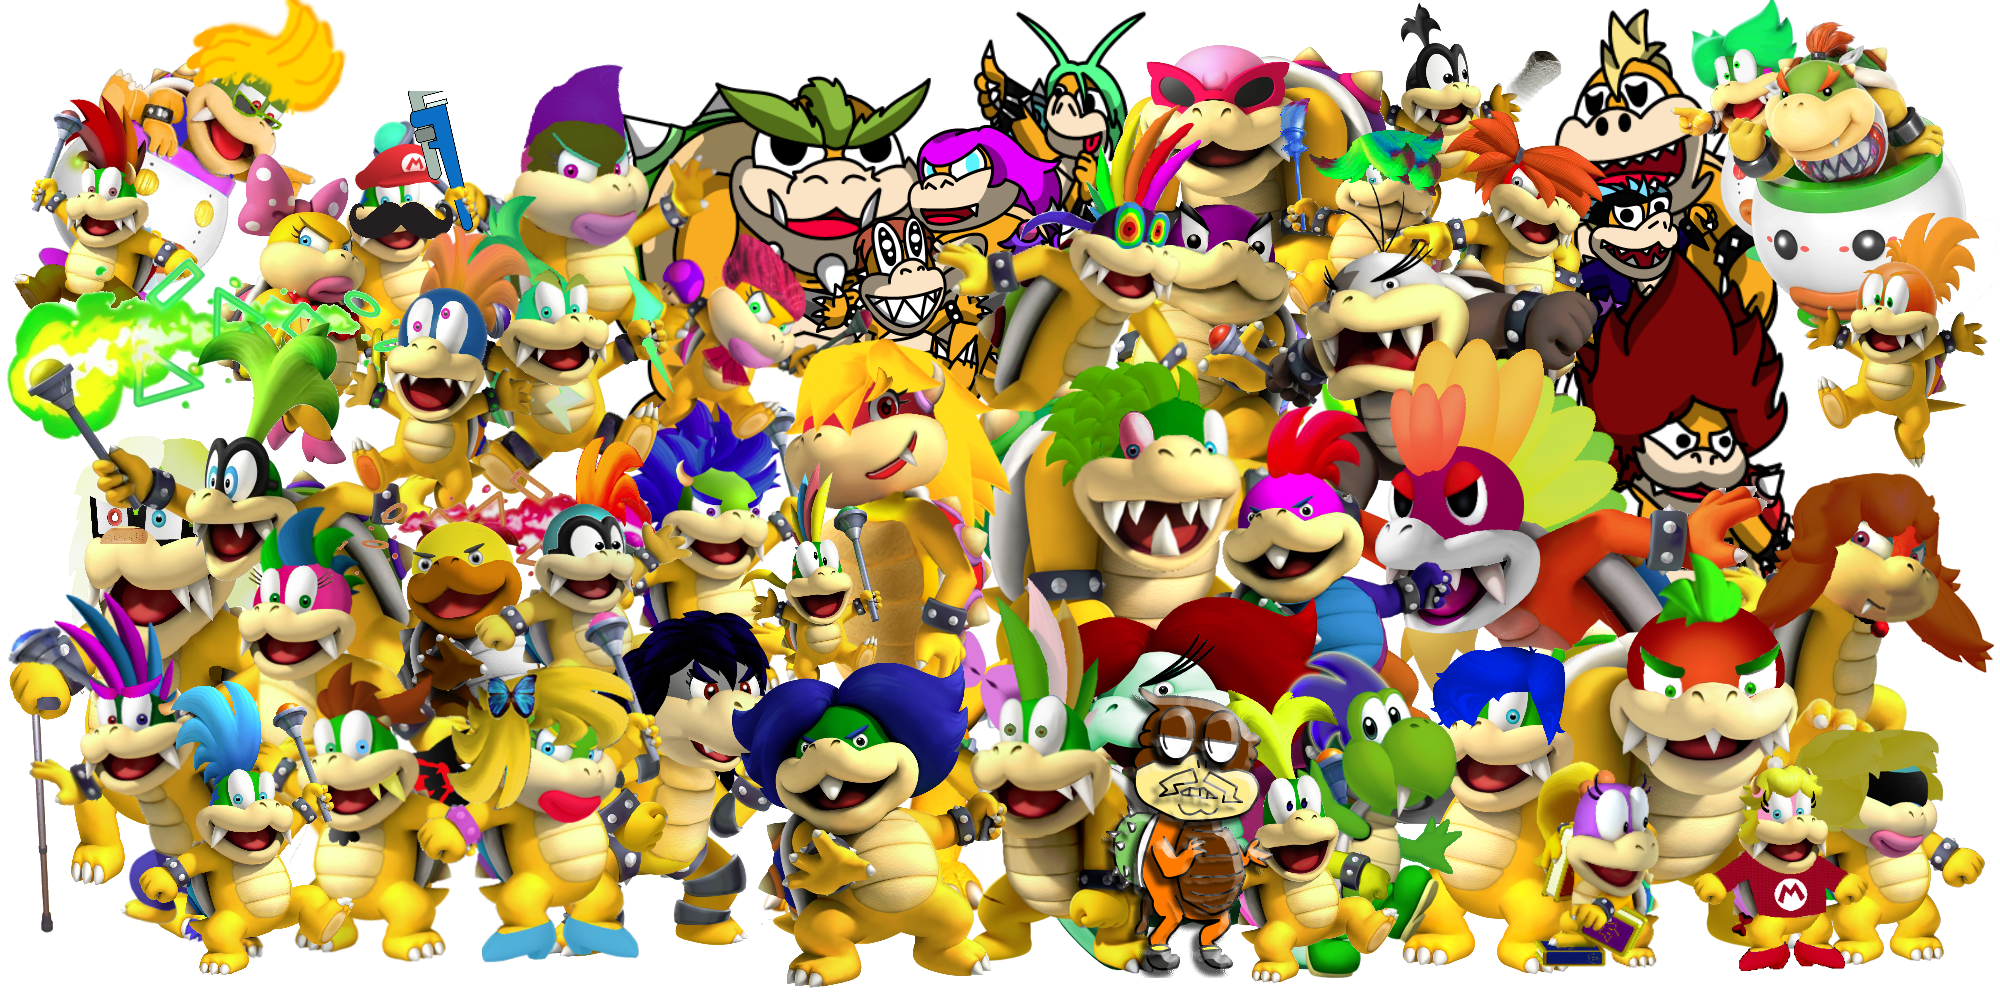 Image All Koopalings 2015png Fantendo Nintendo Fanon Wiki Fandom Powered By Wikia 7119